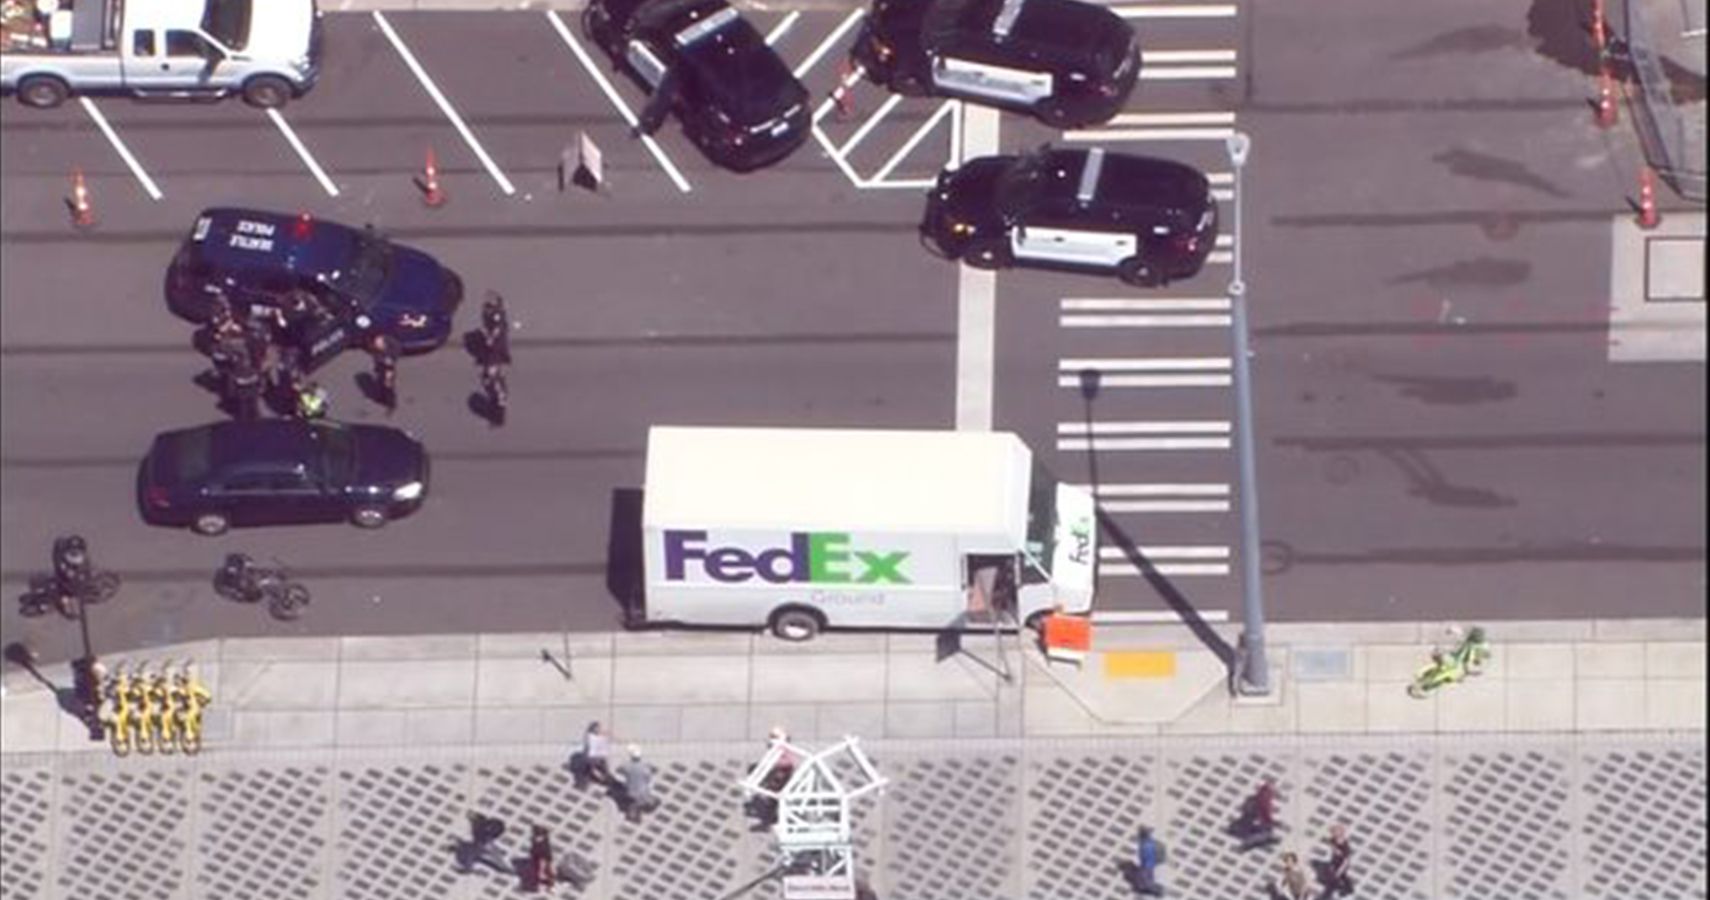 Shawn Shaputis Stolen FedEx Truck